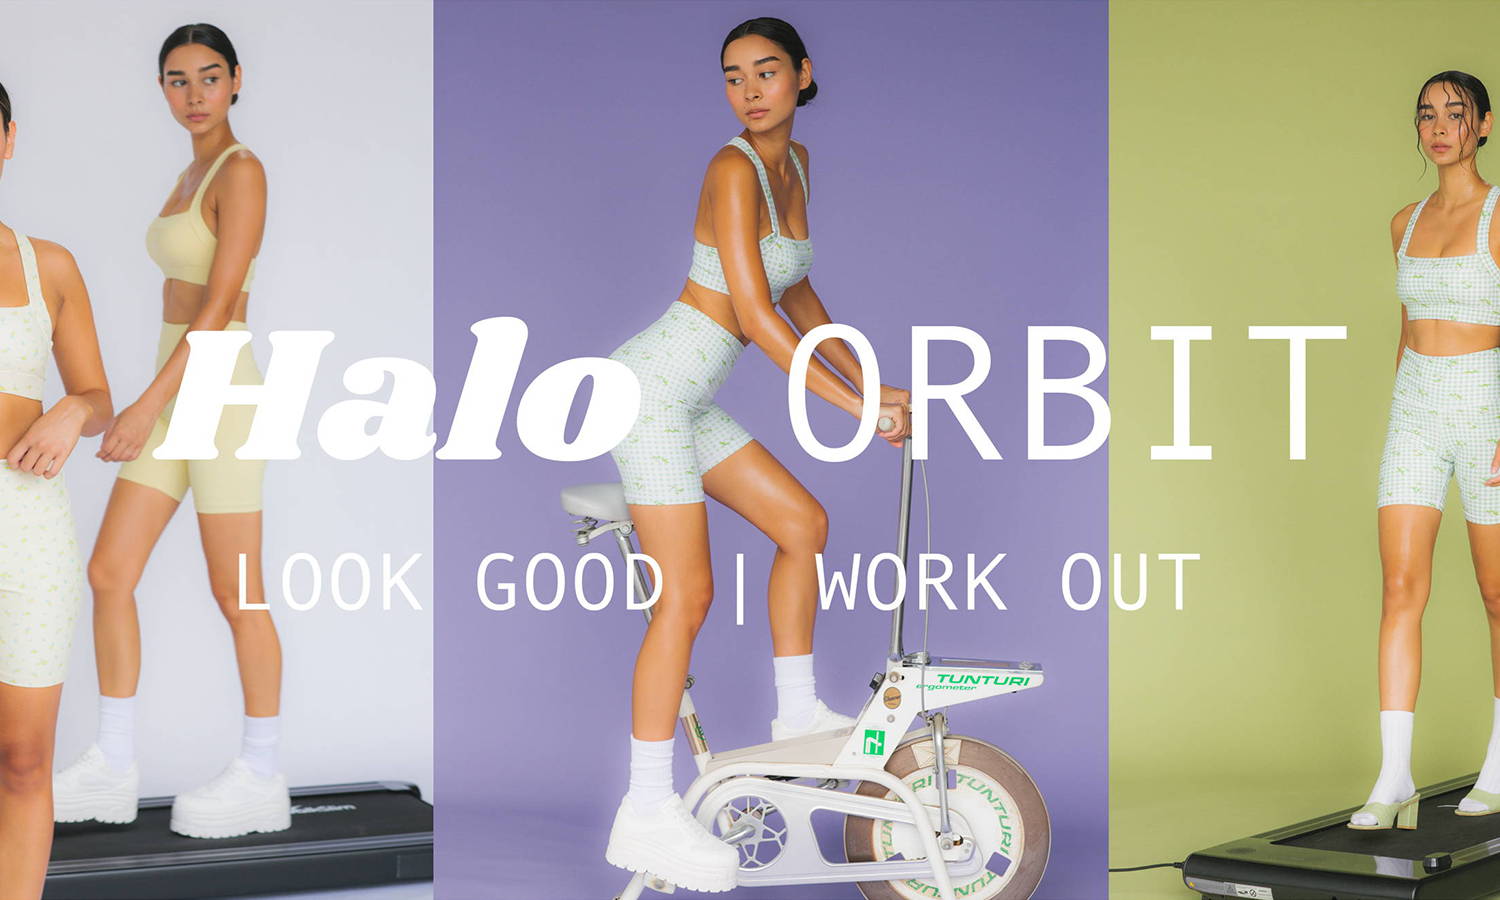 The Halo Orbit Campaign